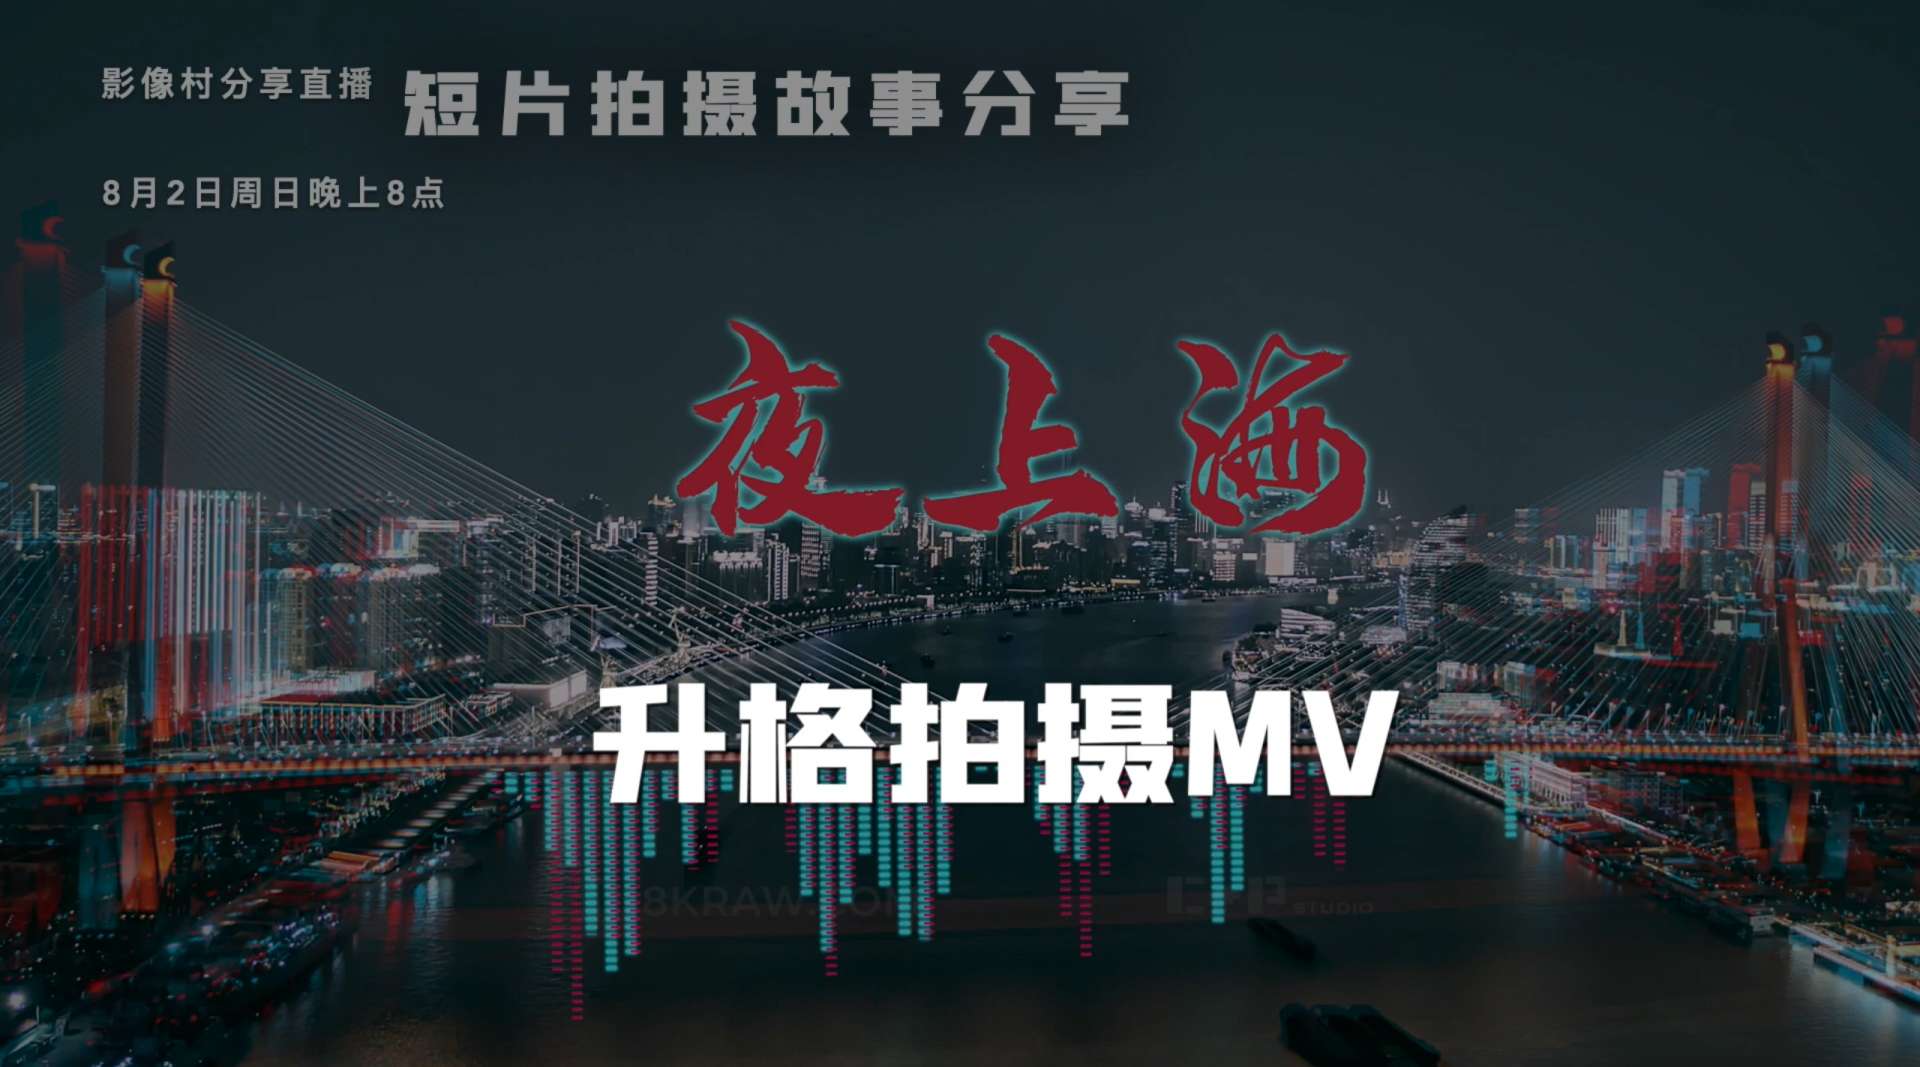 机长分享《夜上海》拍摄台前幕后-5- 升格拍摄MV